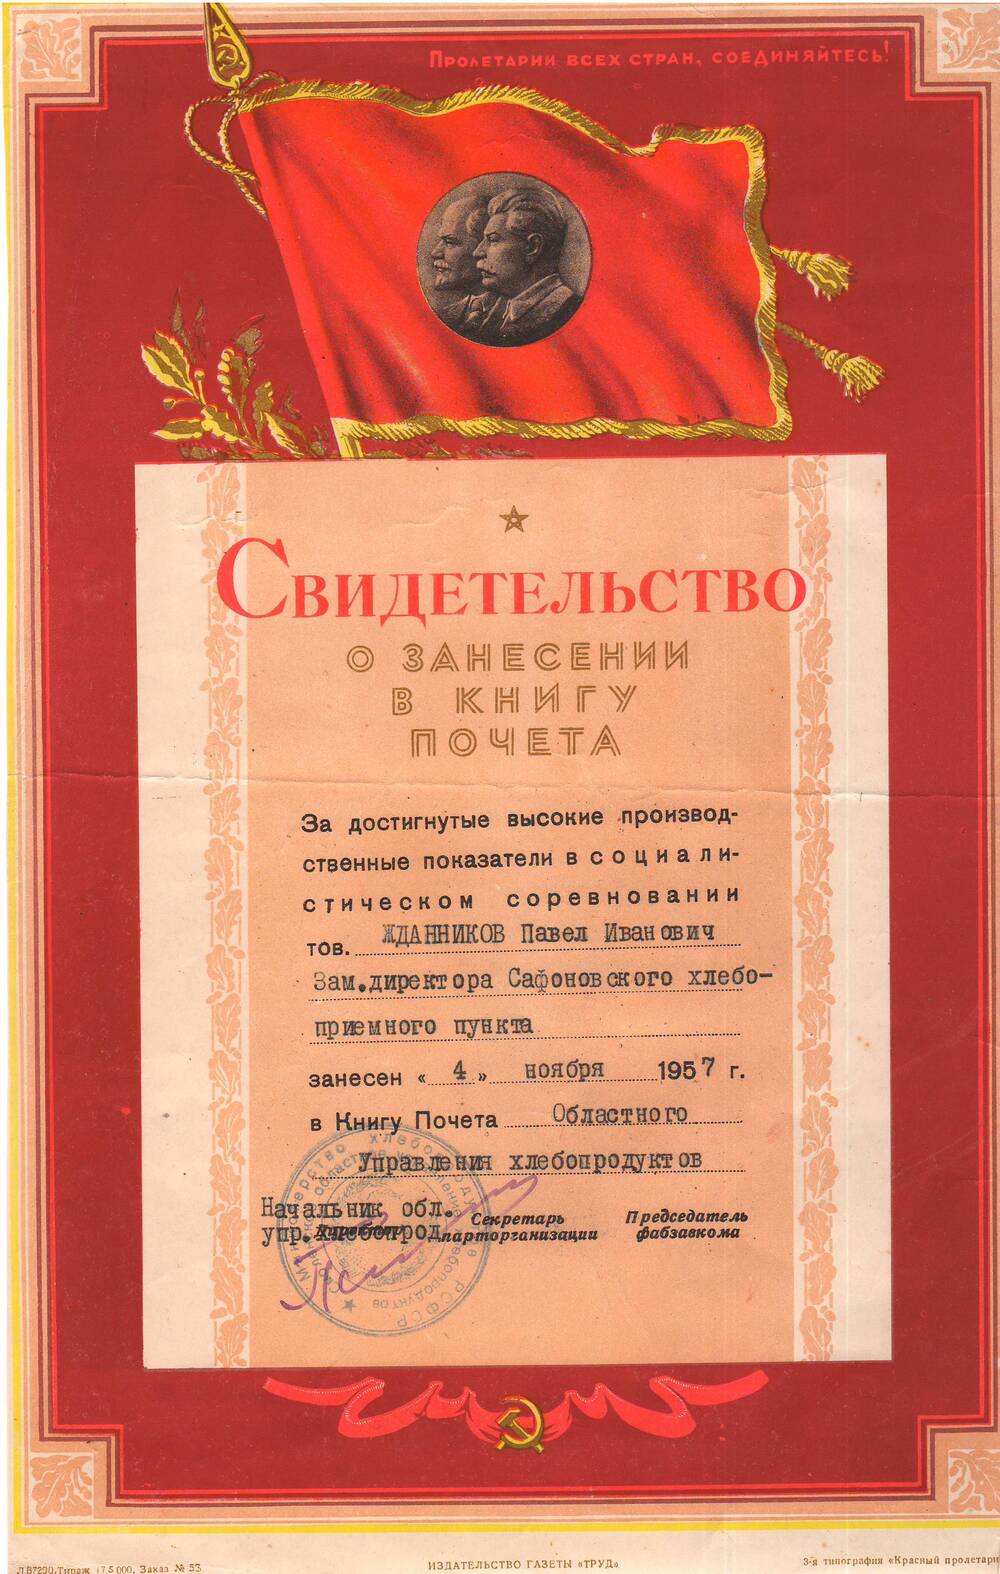 Свидетельство о занесении в книгу почета областного Управления хлебопродуктов от  4 ноября 1957 года.